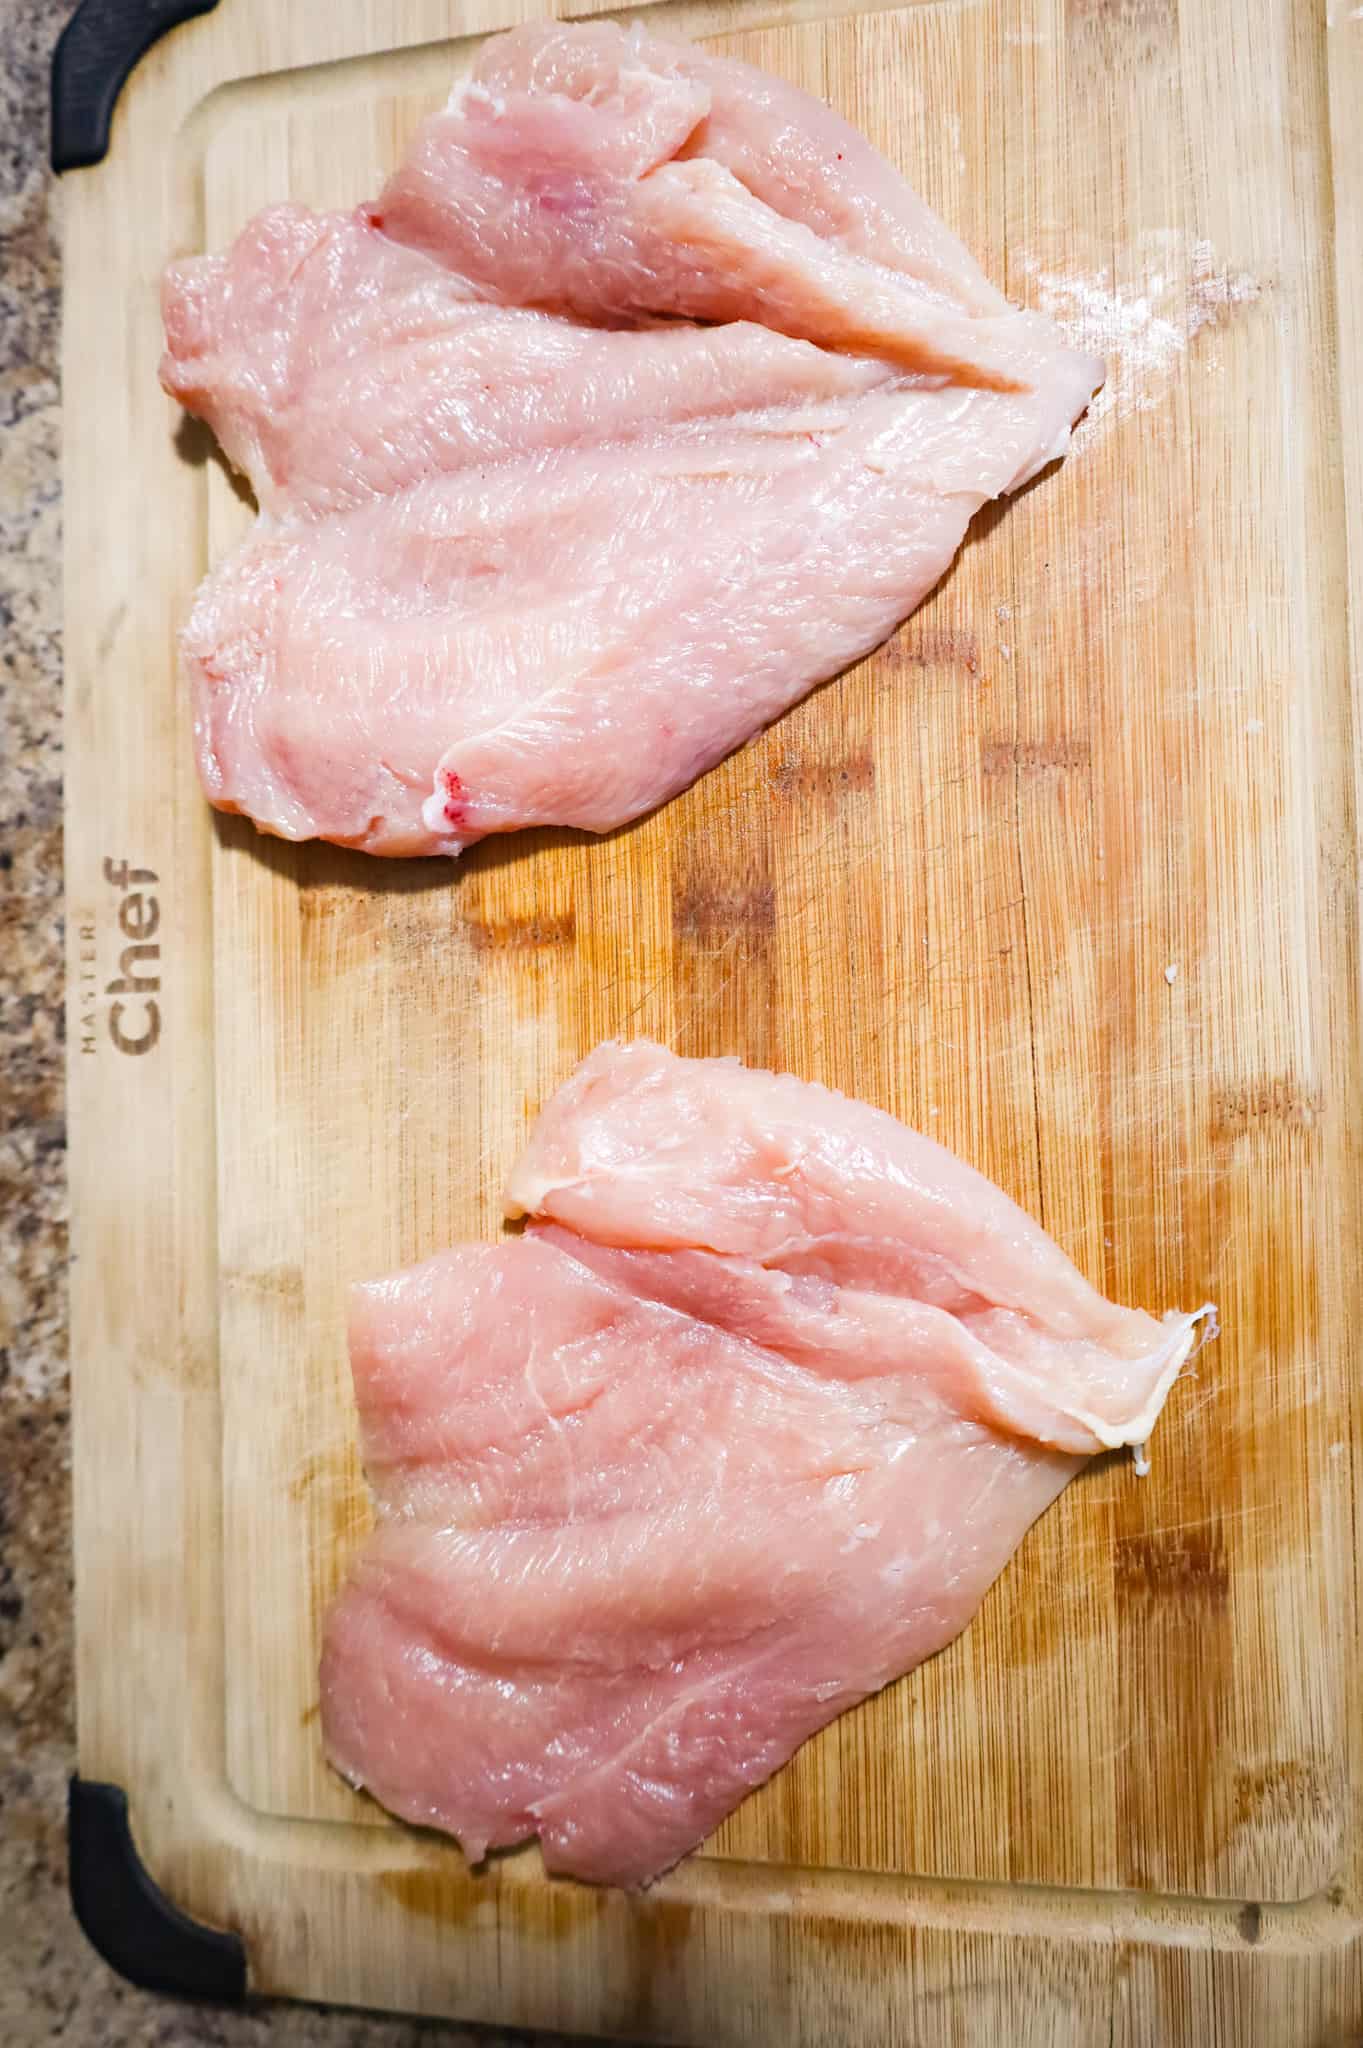 butterflied chicken breasts on a cutting board